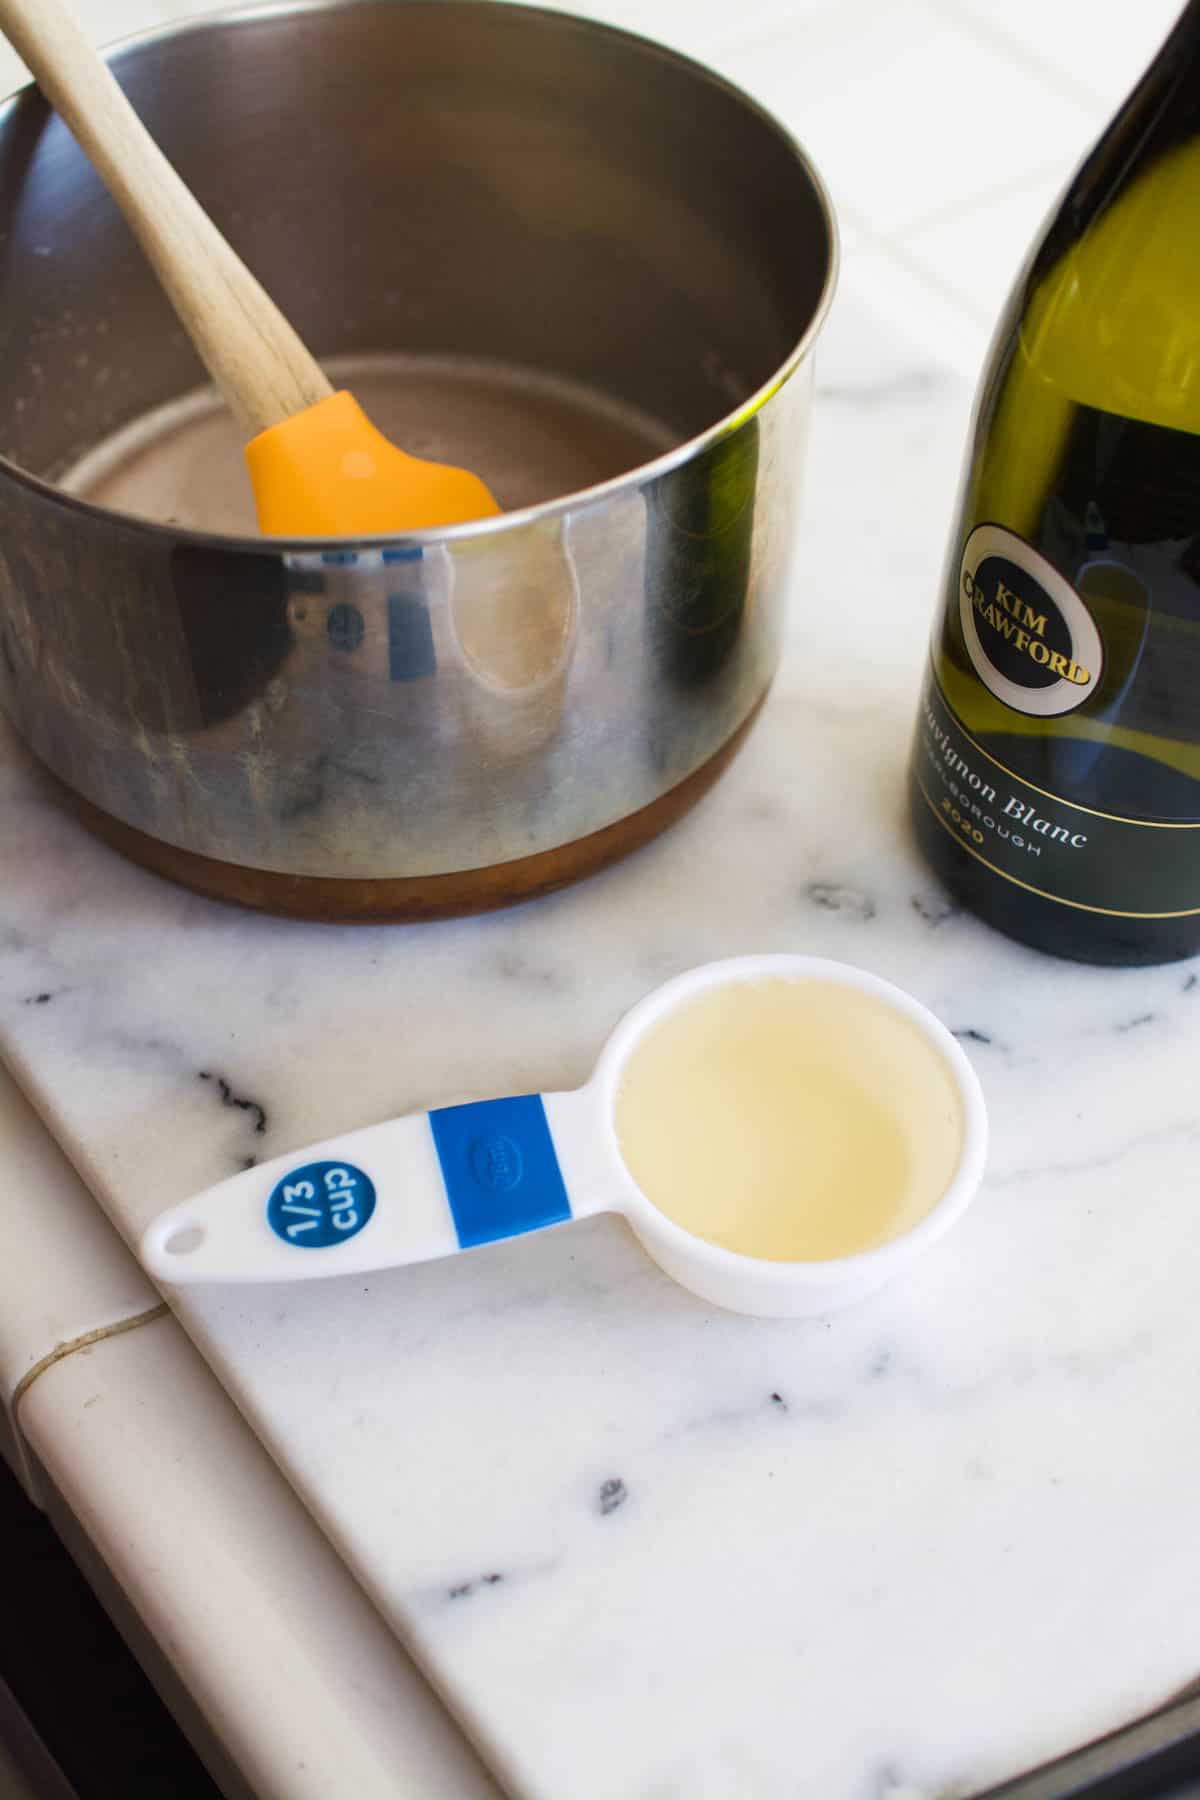 A measuring cup of sauvignon blanc next to a saucepan on a counter.